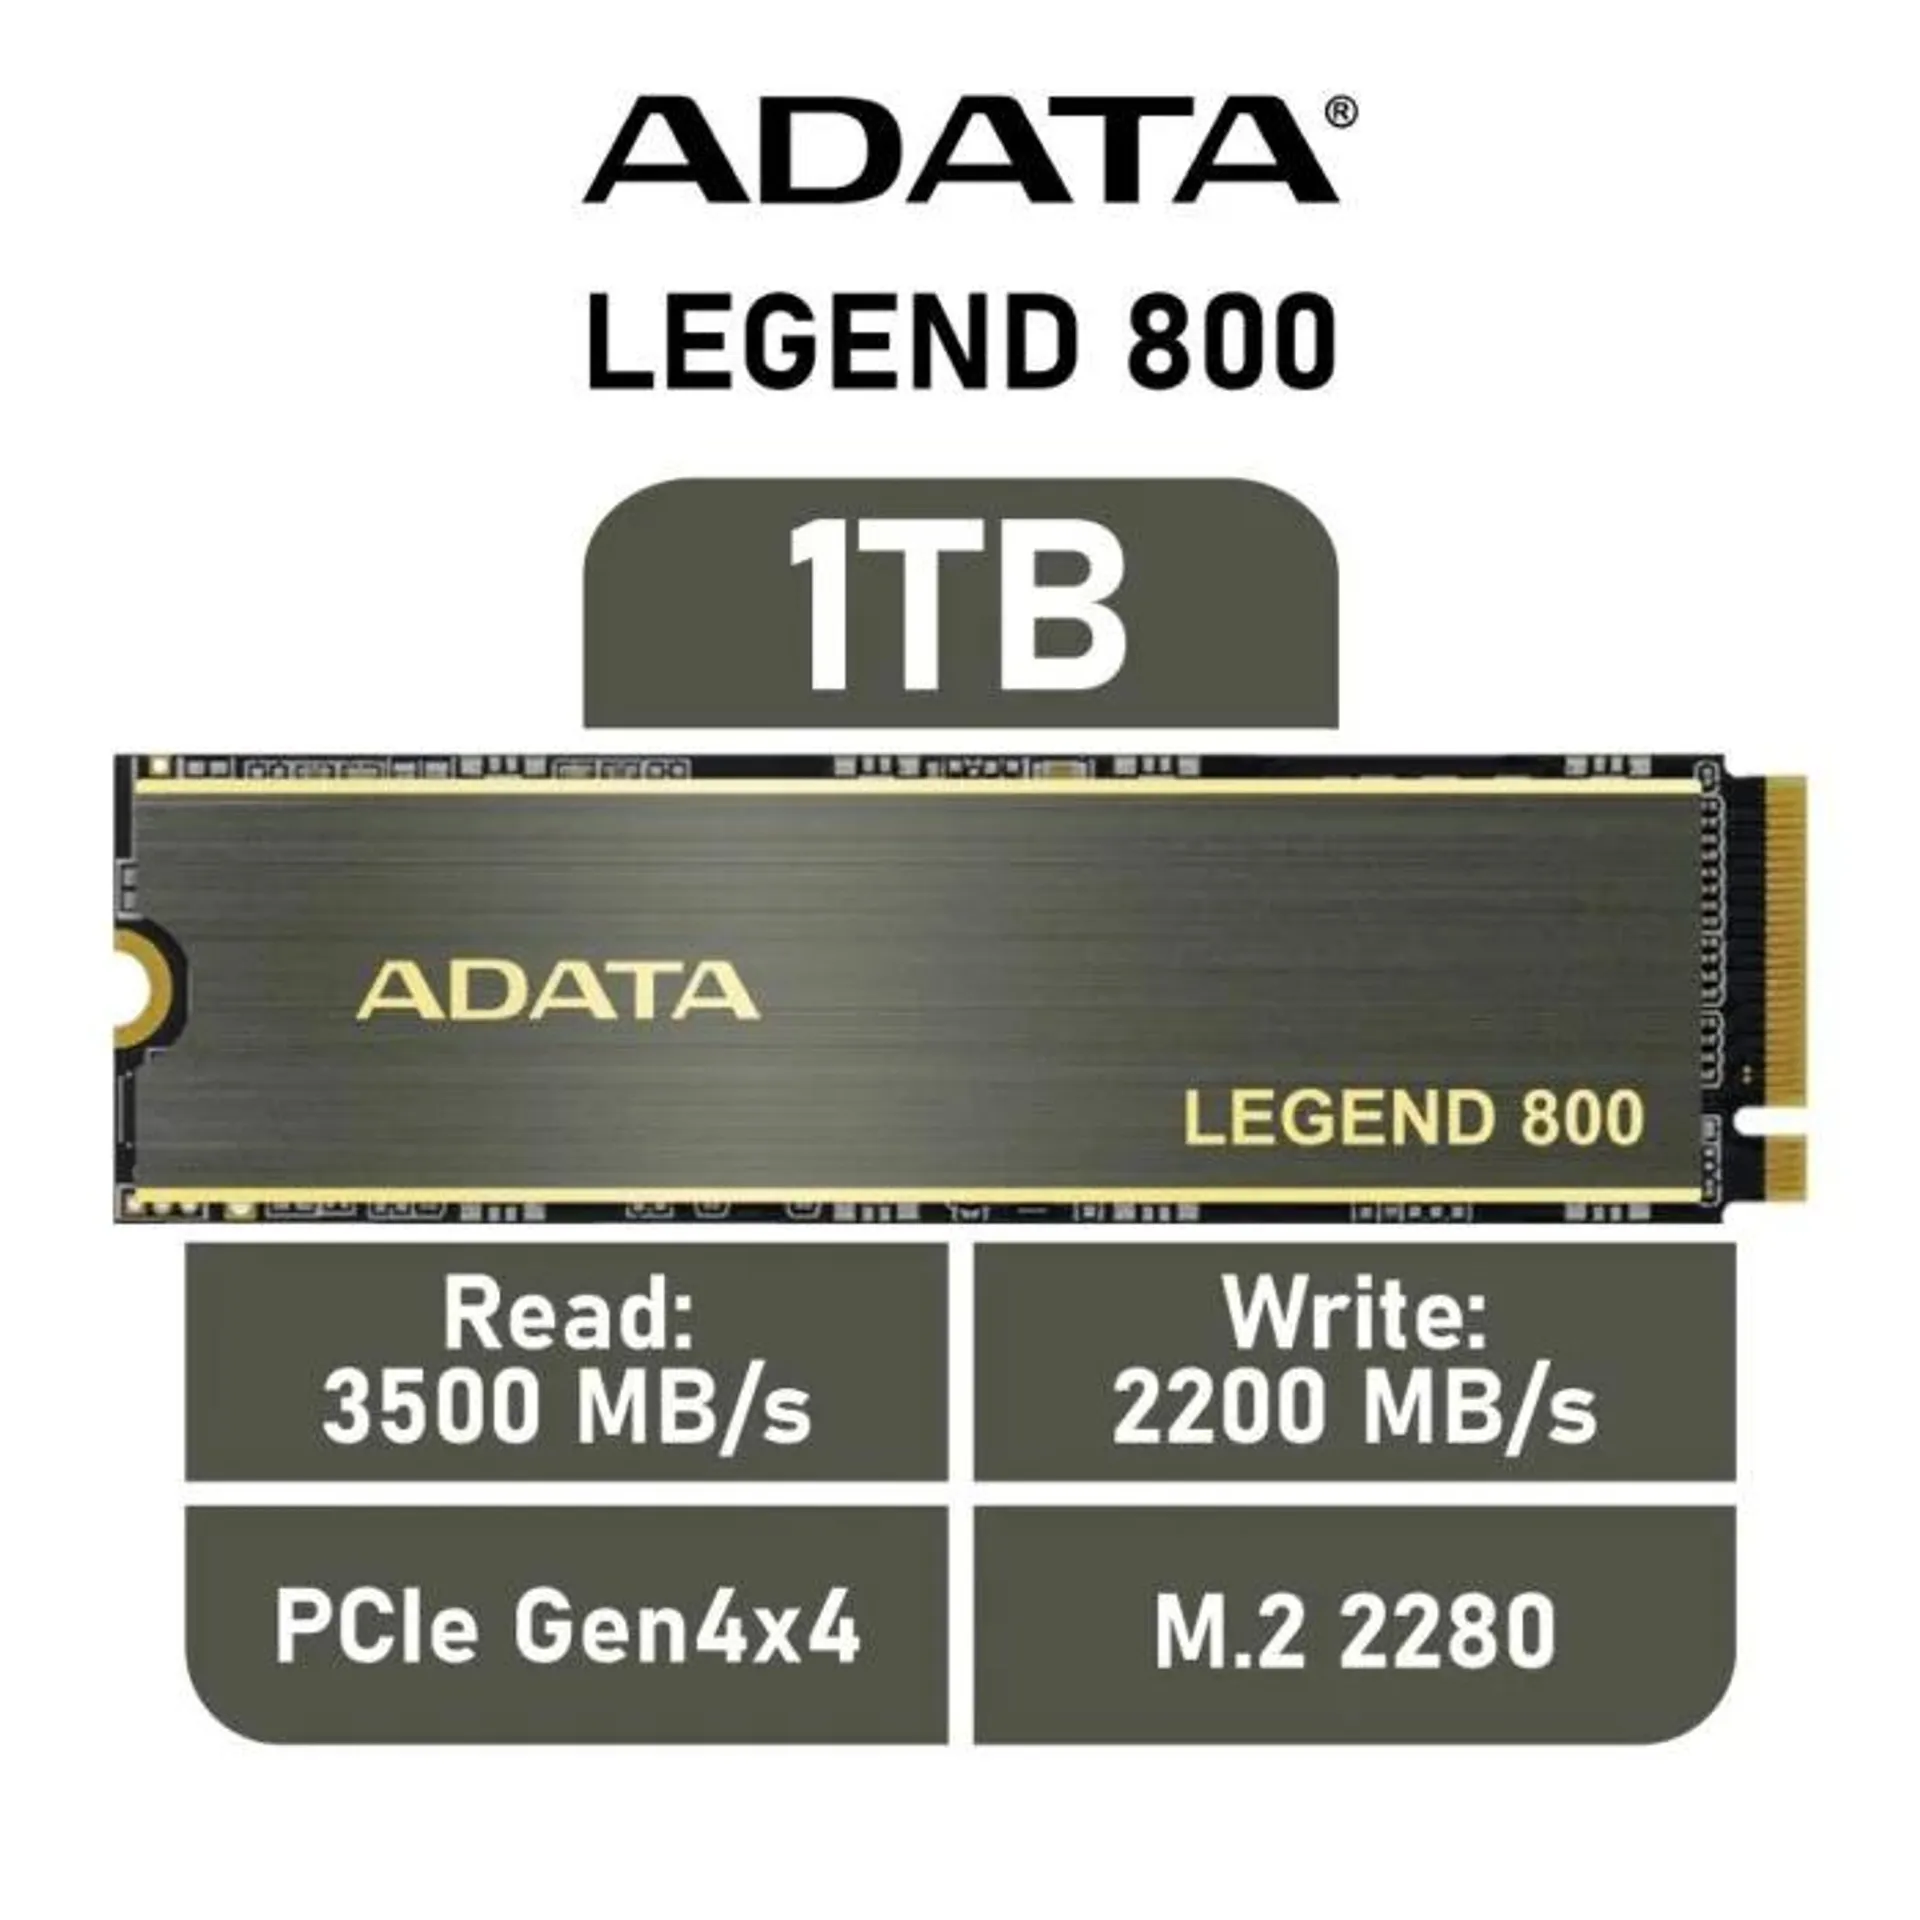 ADATA LEGEND 800 1TB PCIe Gen4x4 ALEG-800-1000GCS M.2 2280 Solid State Drive